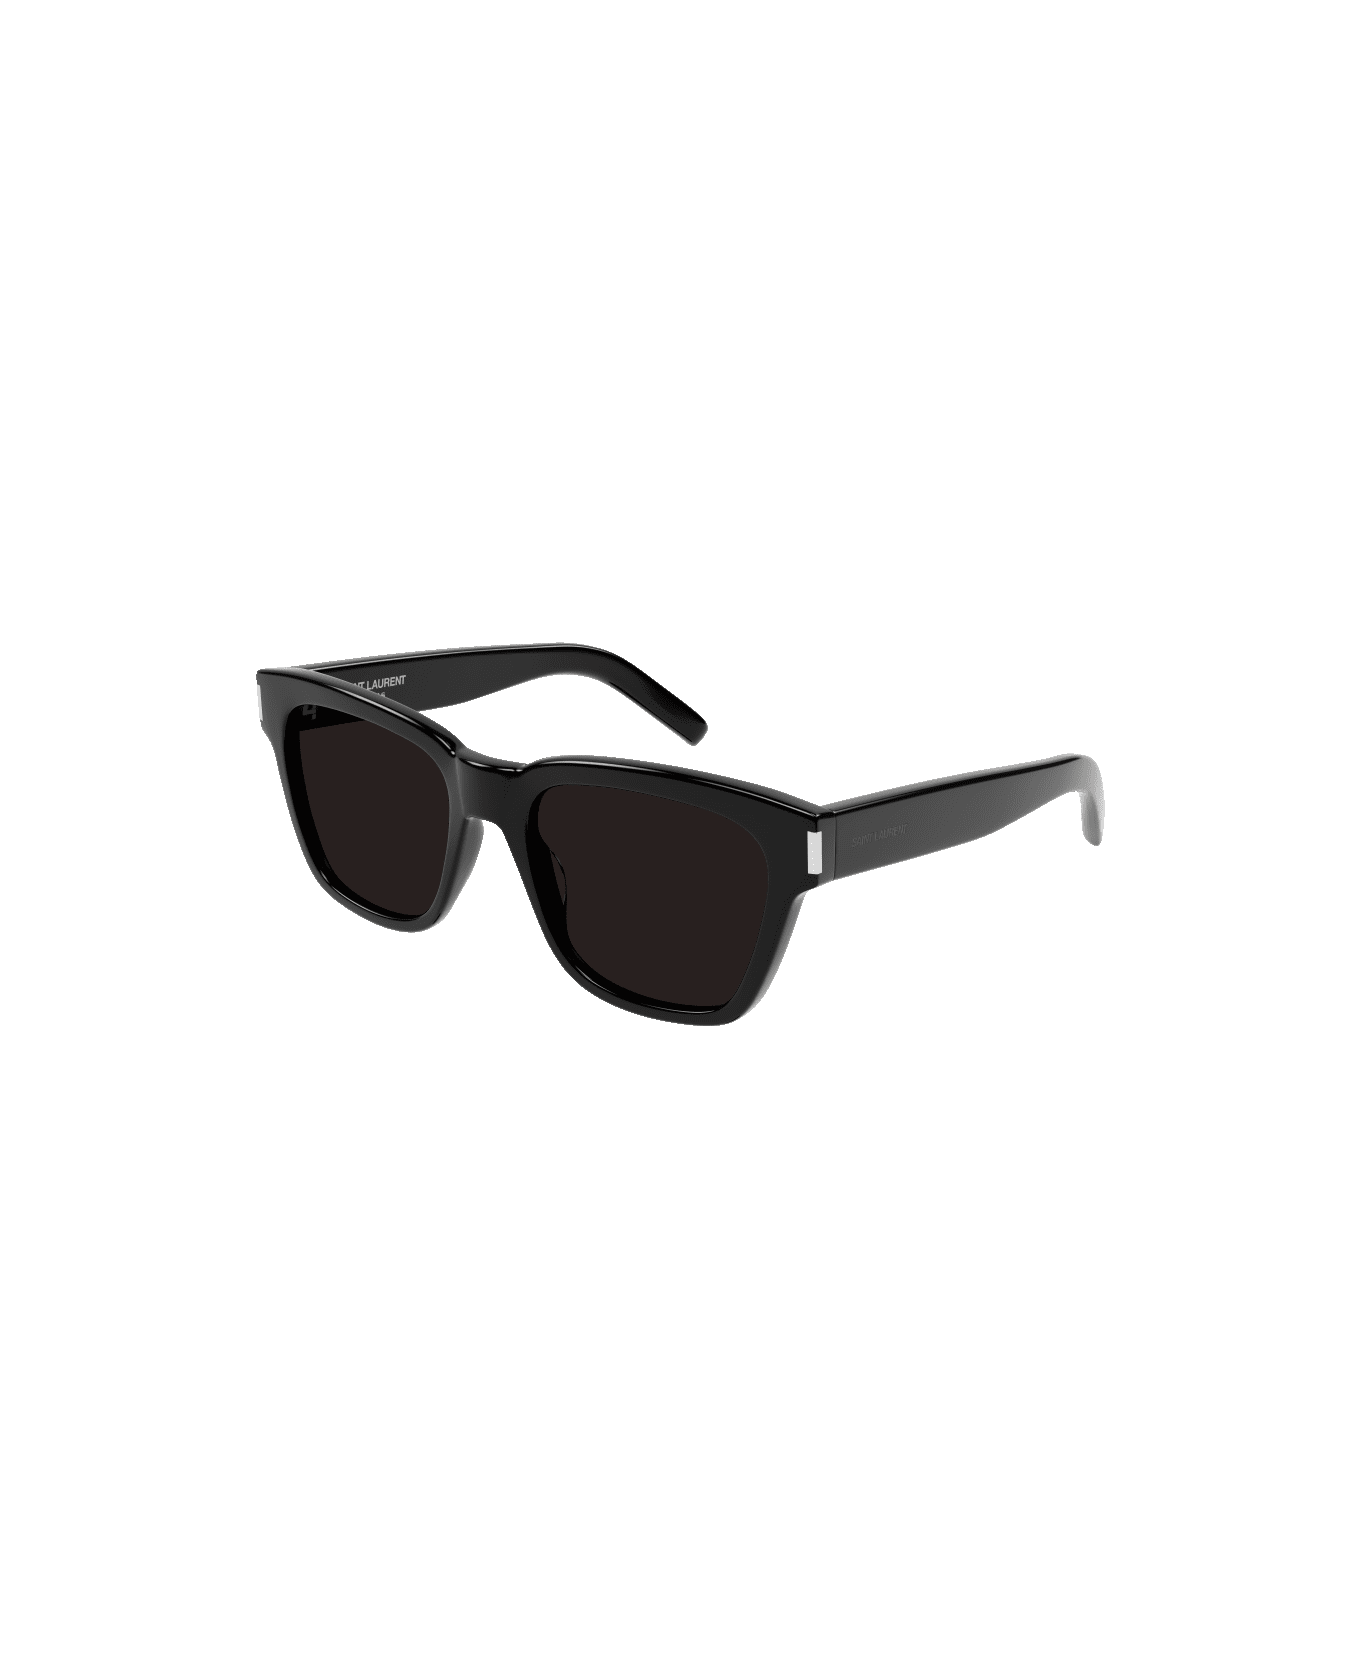 Saint Laurent Eyewear sl 560 001 Sunglasses Nero - Nero